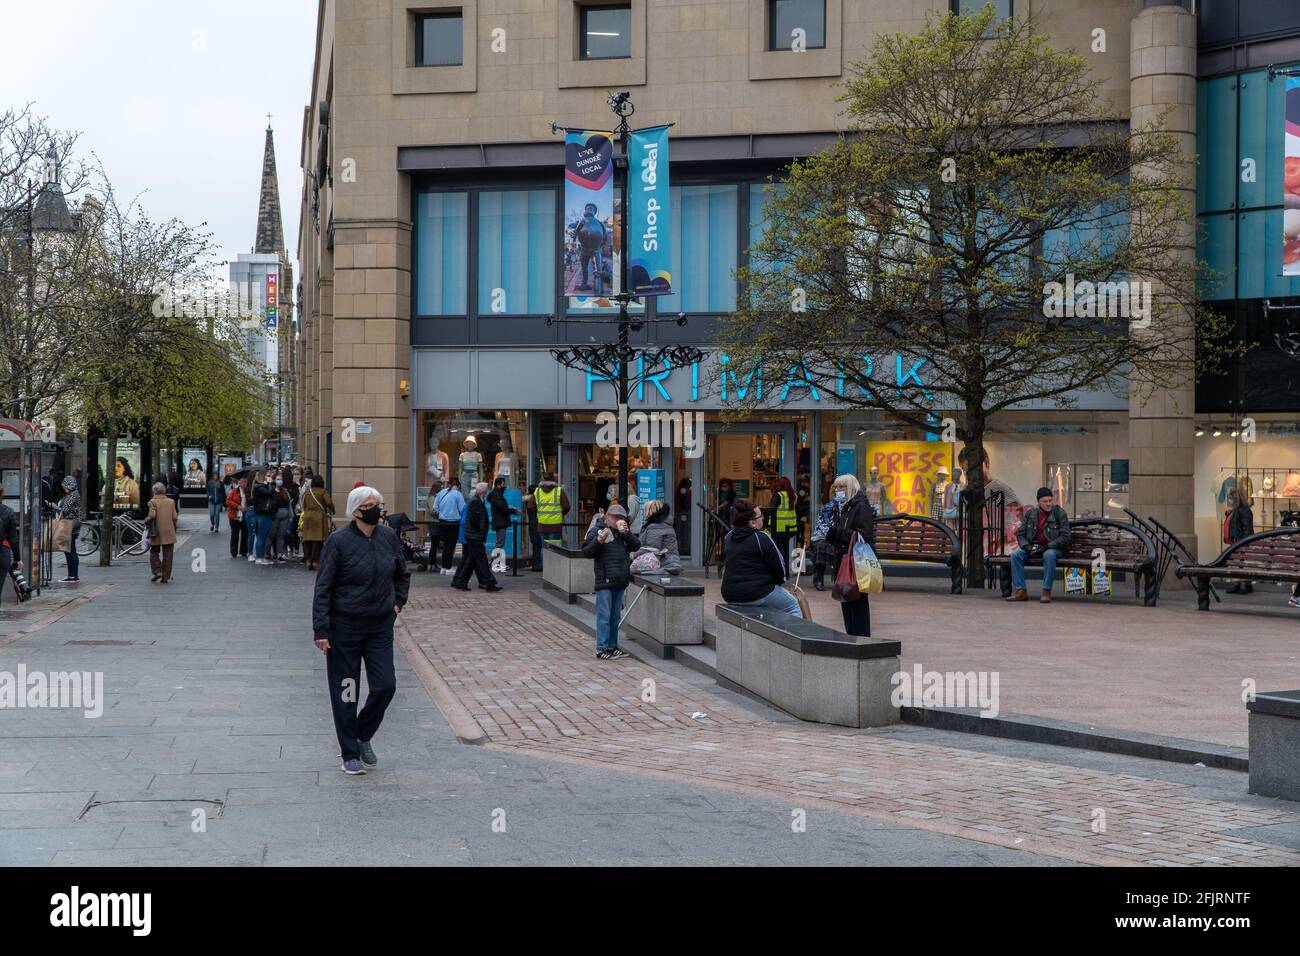 Dundee, Tayside, Schottland 26.04.21: Eine große Schlange von Menschen, die darauf warten, in primark, im überschlossenen Einkaufszentrum Dundee, einkaufen zu gehen, an dem Tag, an dem Schottland nach Monaten einer zweiten Sperre die 3. Stufe erreicht hat, bei der alle Geschäfte geschlossen wurden. Kredit: Barry Nixon Stable Air Media/Alamy Live Nachrichten Stockfoto